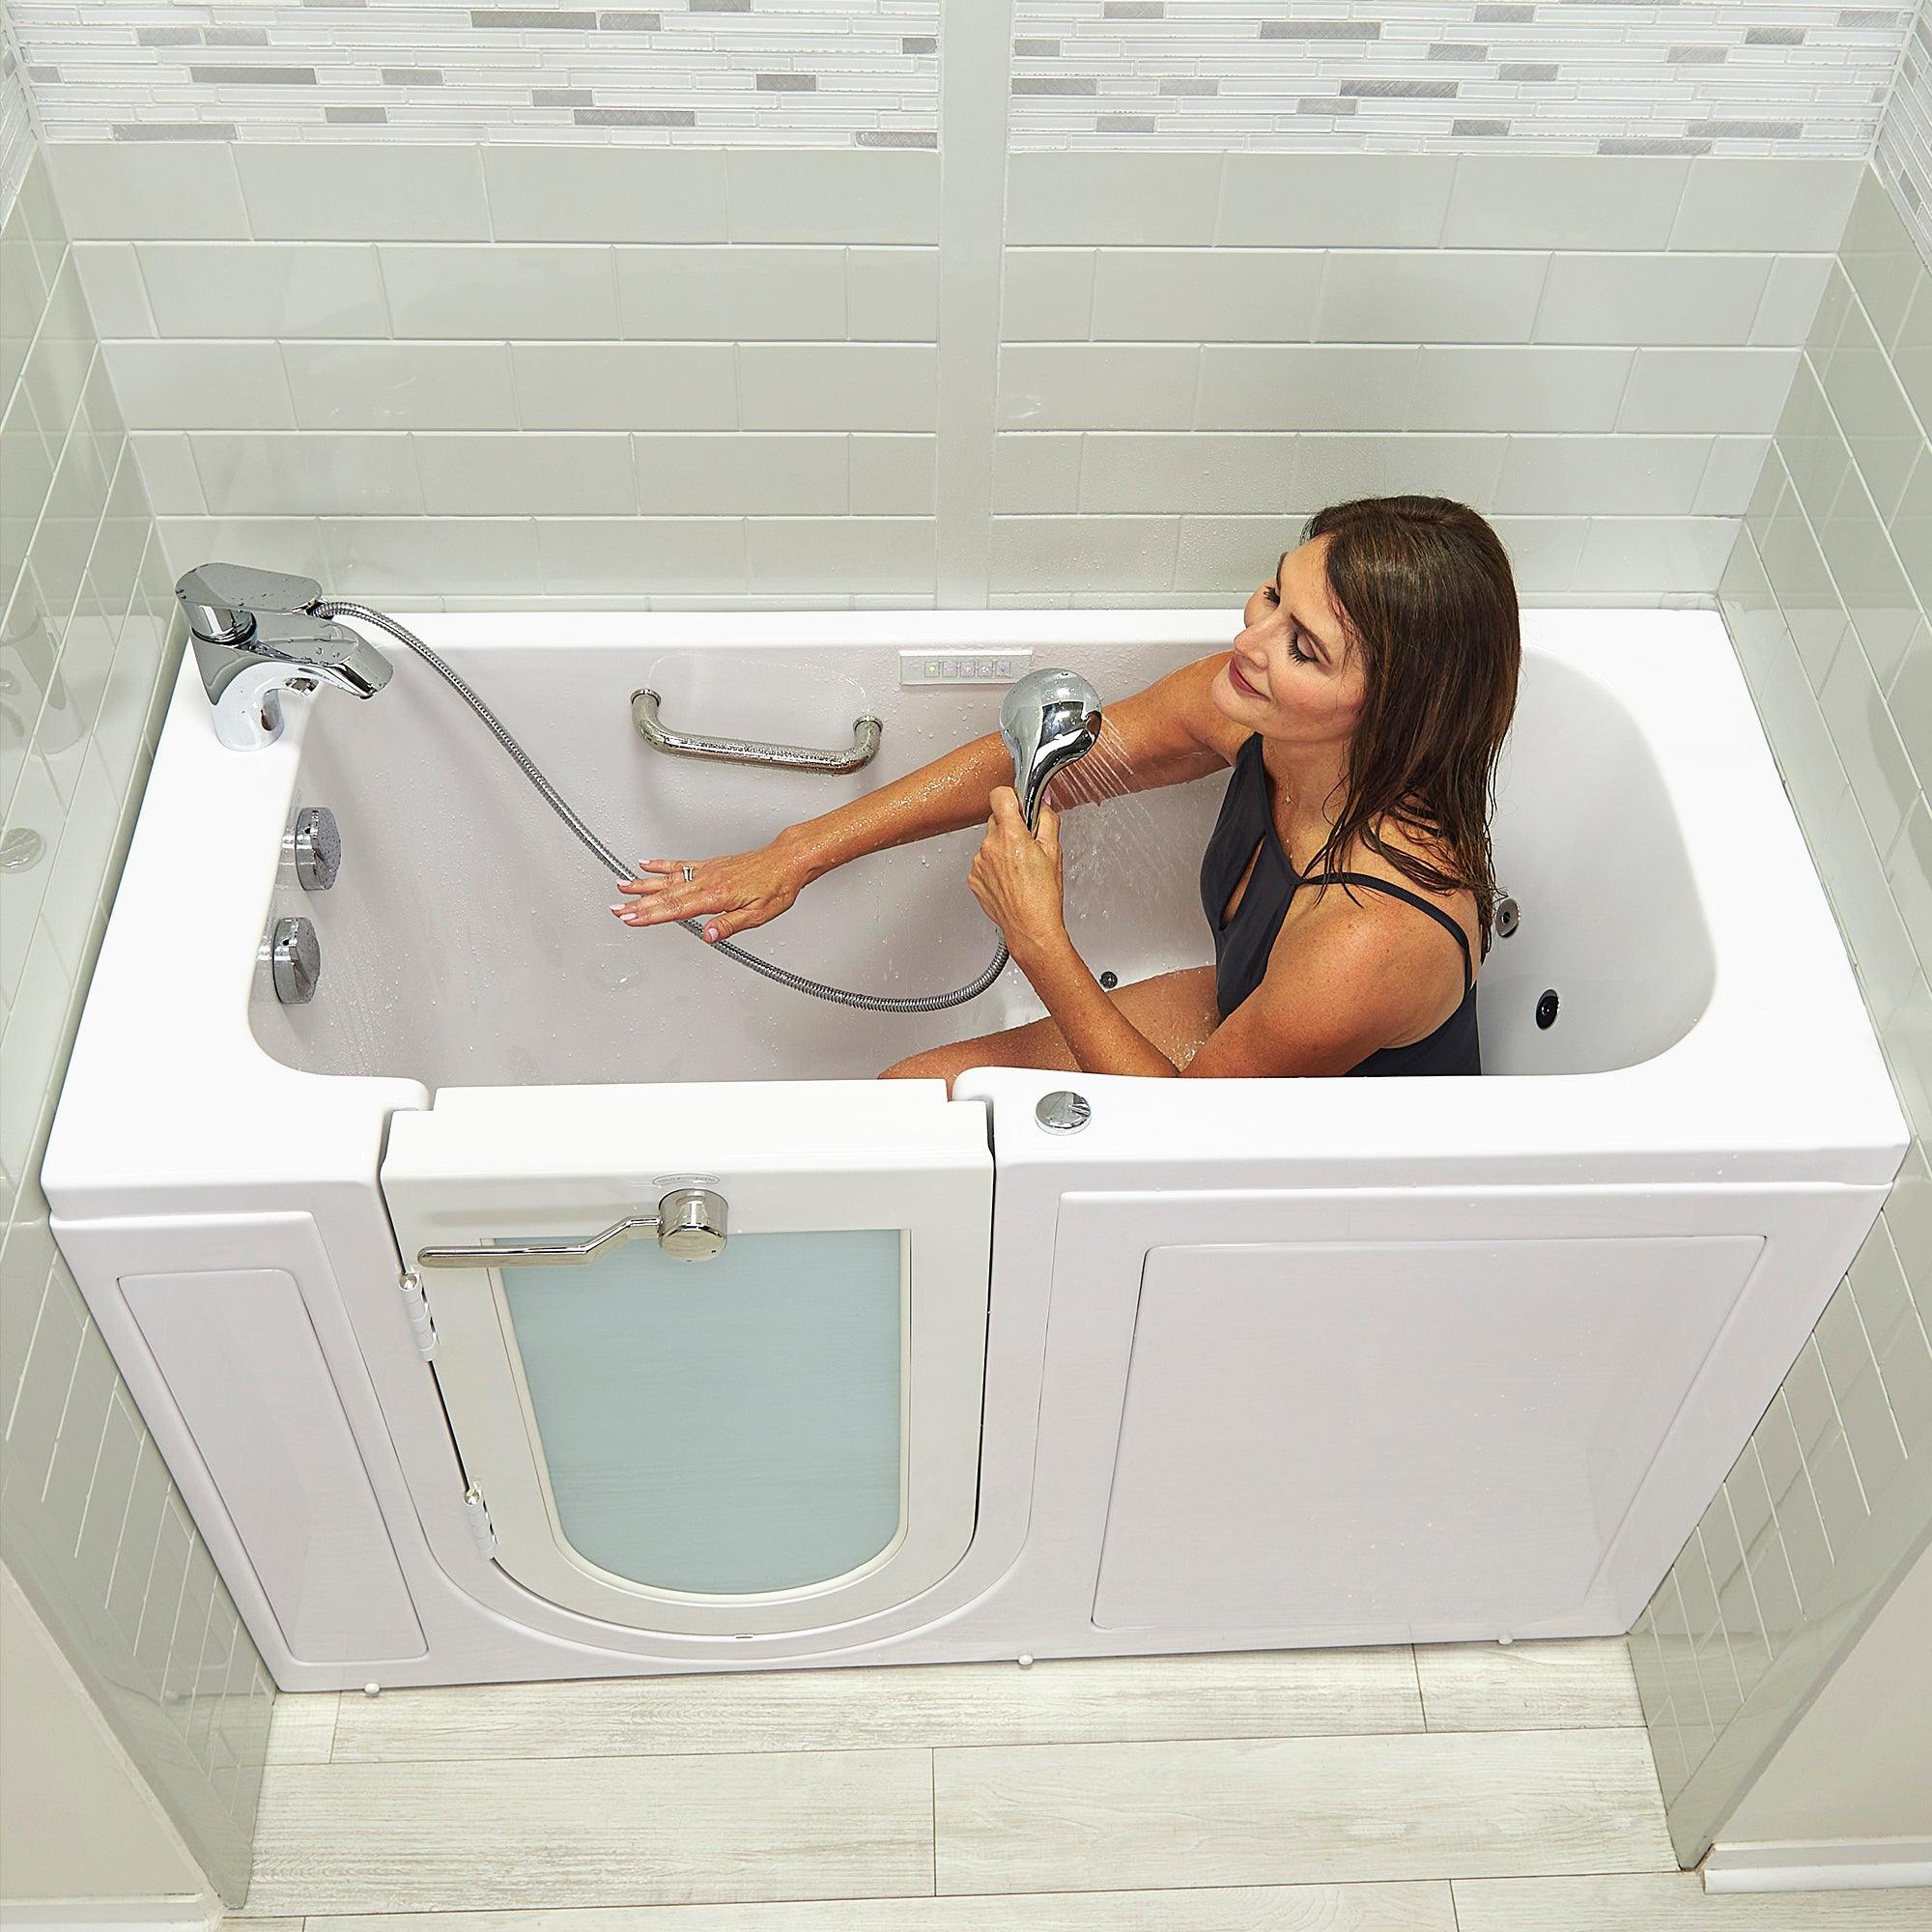 Ella Lounger 27" x 60" Acrylic Air and Hydro Massage Walk-In Bathtub - Bathroom Design Center